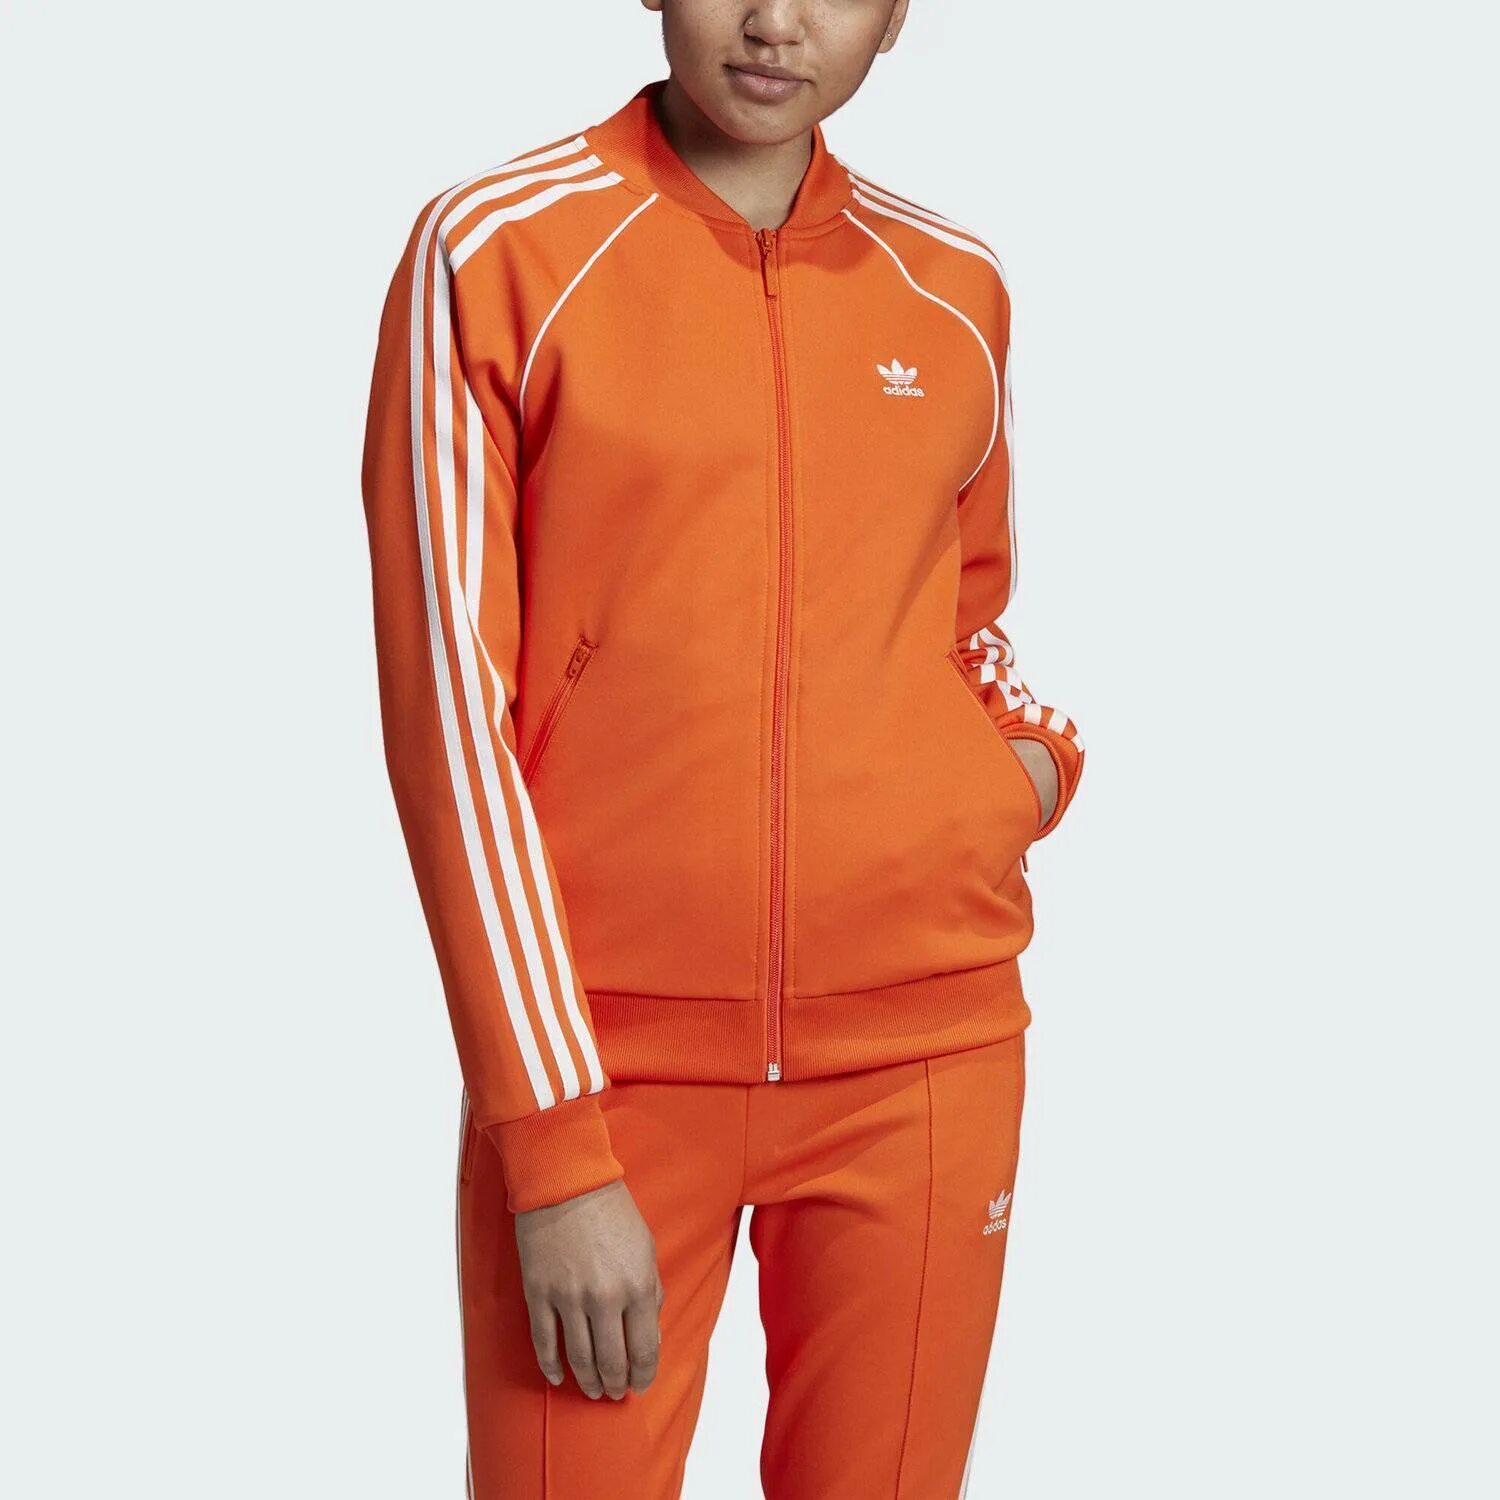 Оранжевый спортивный костюм. Adidas SST олимпийка мужская оранжевая. Адидас ориджинал оранжевая олимпийка adidas Originals. Костюм адидас SST оранжевый. Оранжевая олимпийка адидас женская ориджинал.